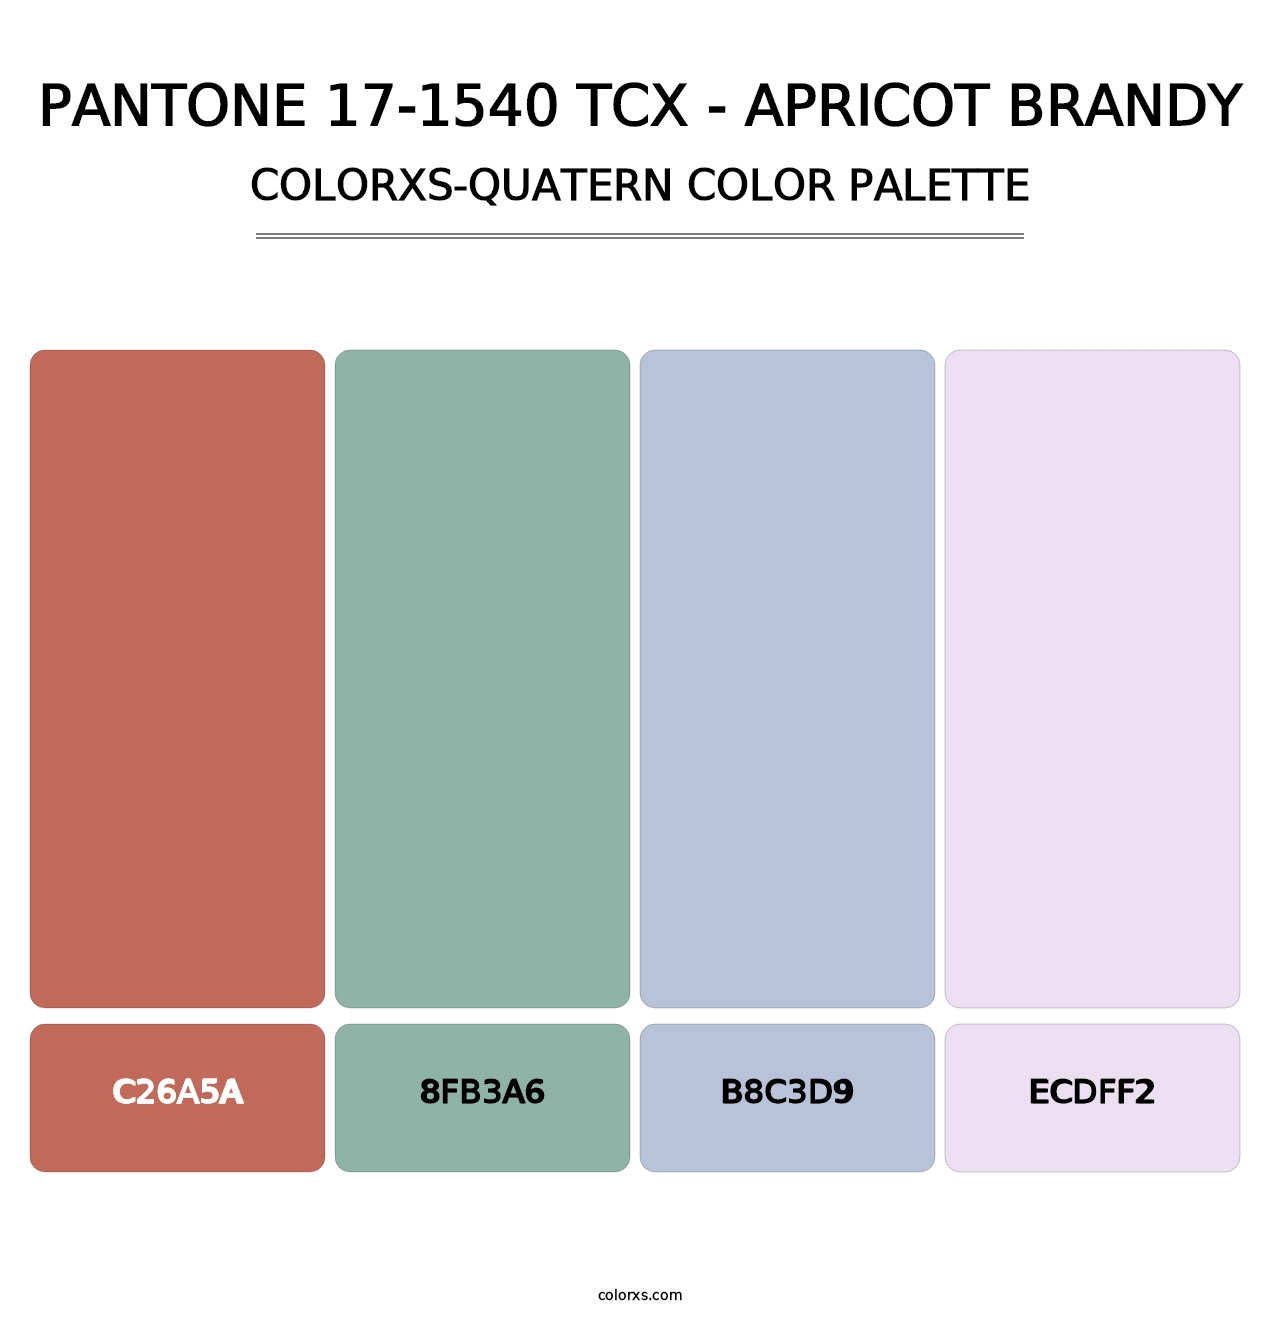 PANTONE 17-1540 TCX - Apricot Brandy - Colorxs Quatern Palette